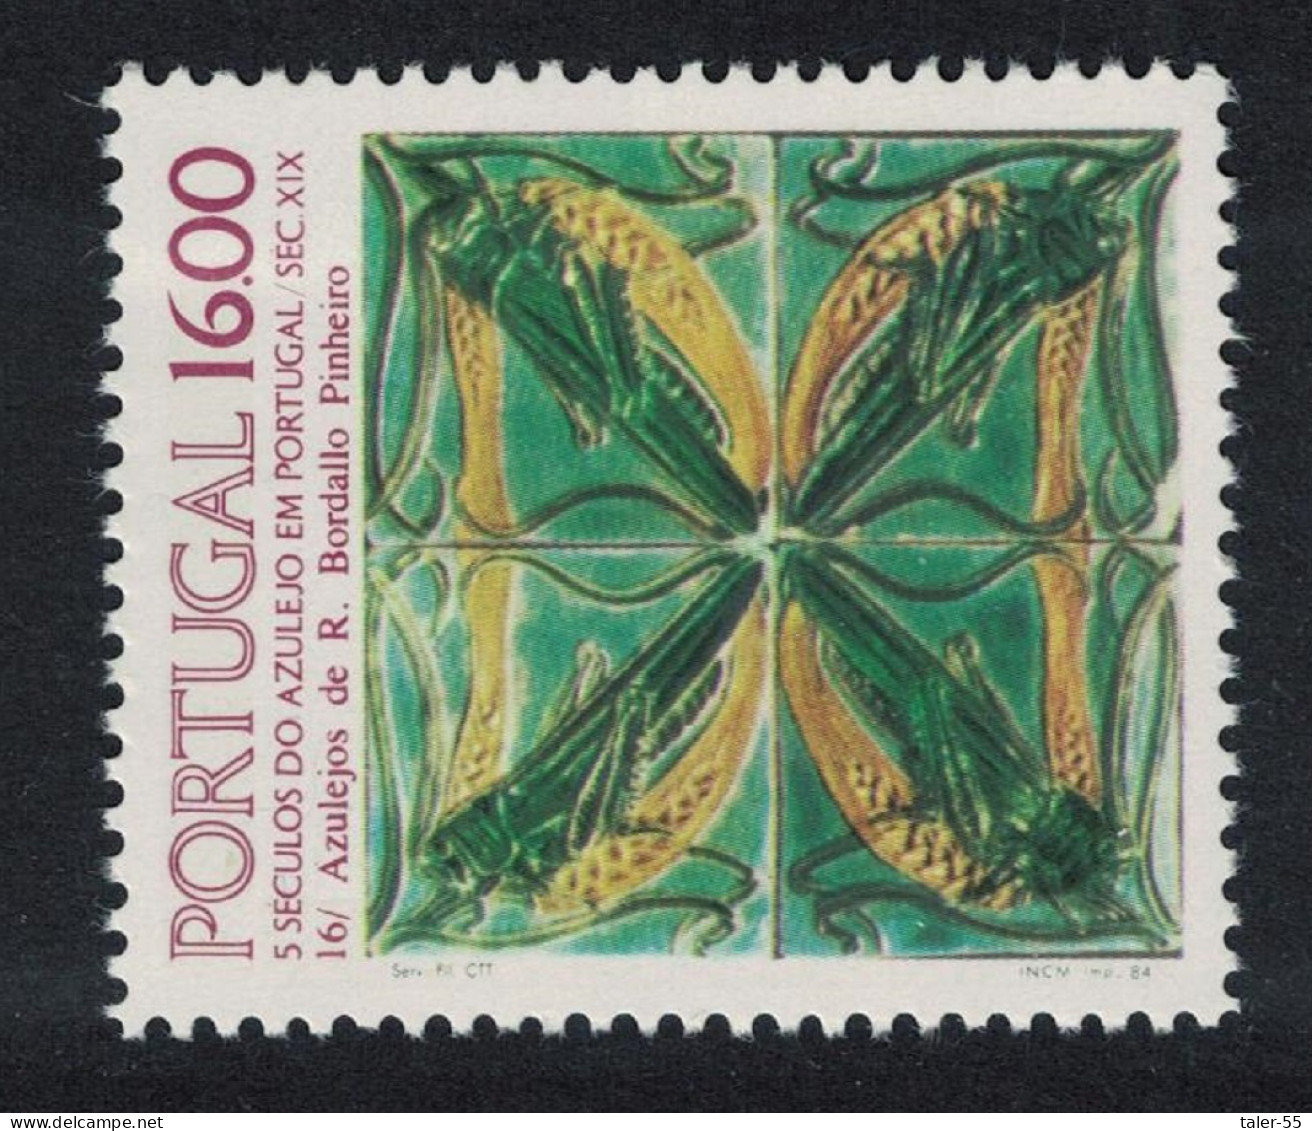 Portugal Tiles 16th Series 1984 MNH SG#1976 - Neufs